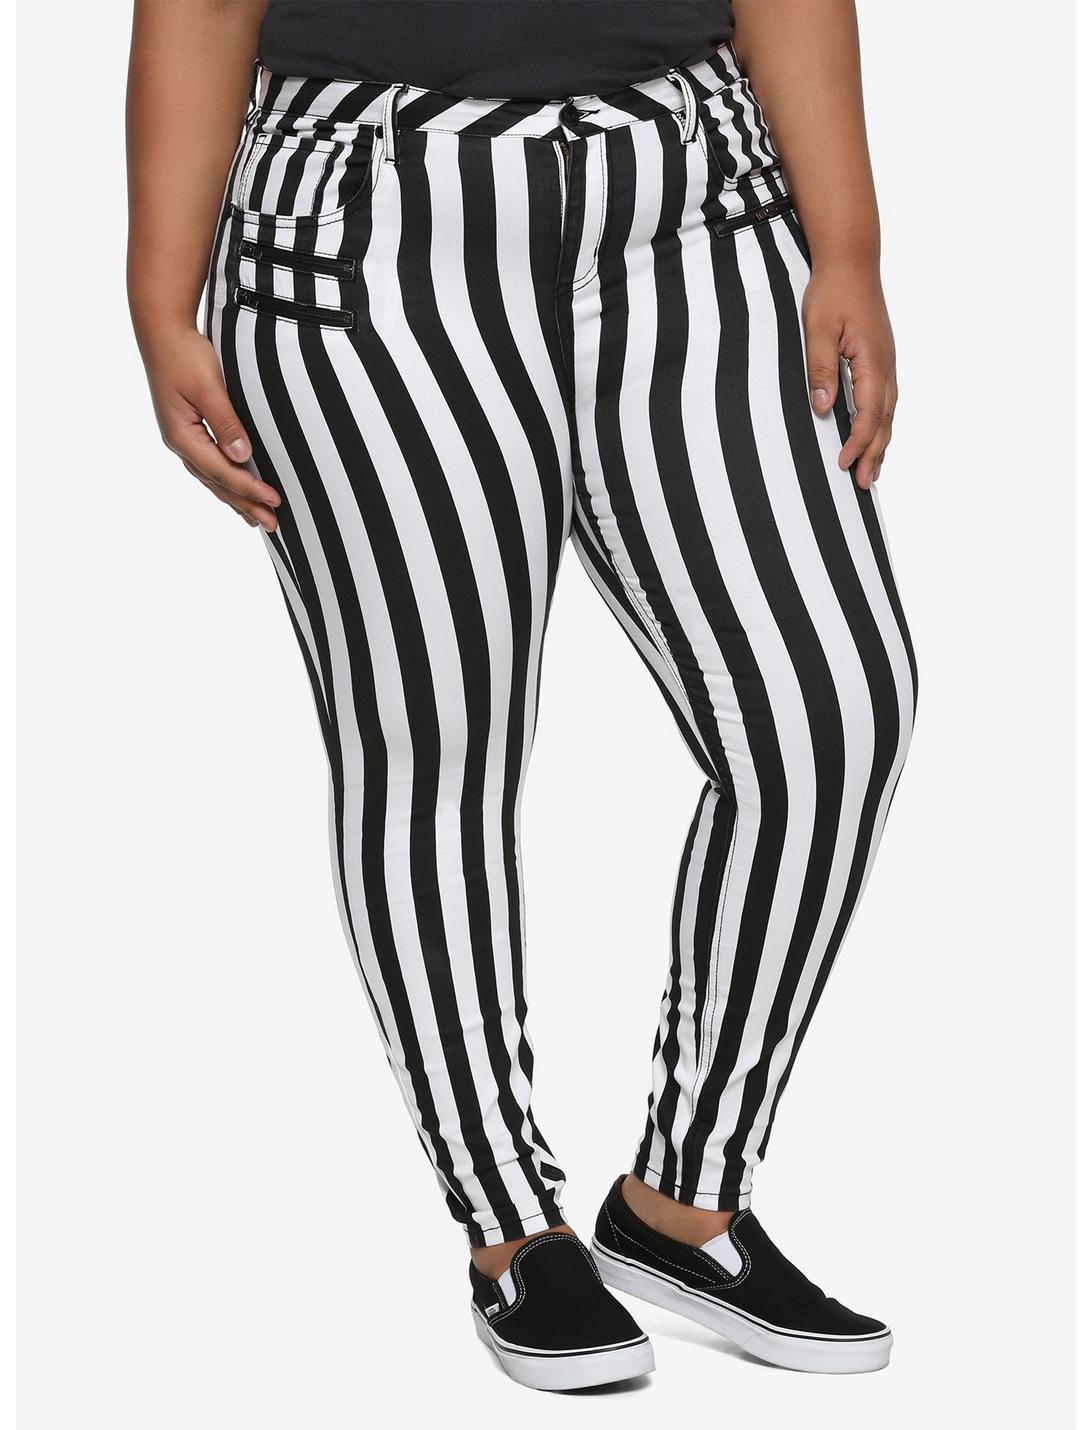 HT Denim Black & White Stripe Hi-Rise Super Skinny Jeans Plus Size, BLACK-WHITE STRIPE, hi-res